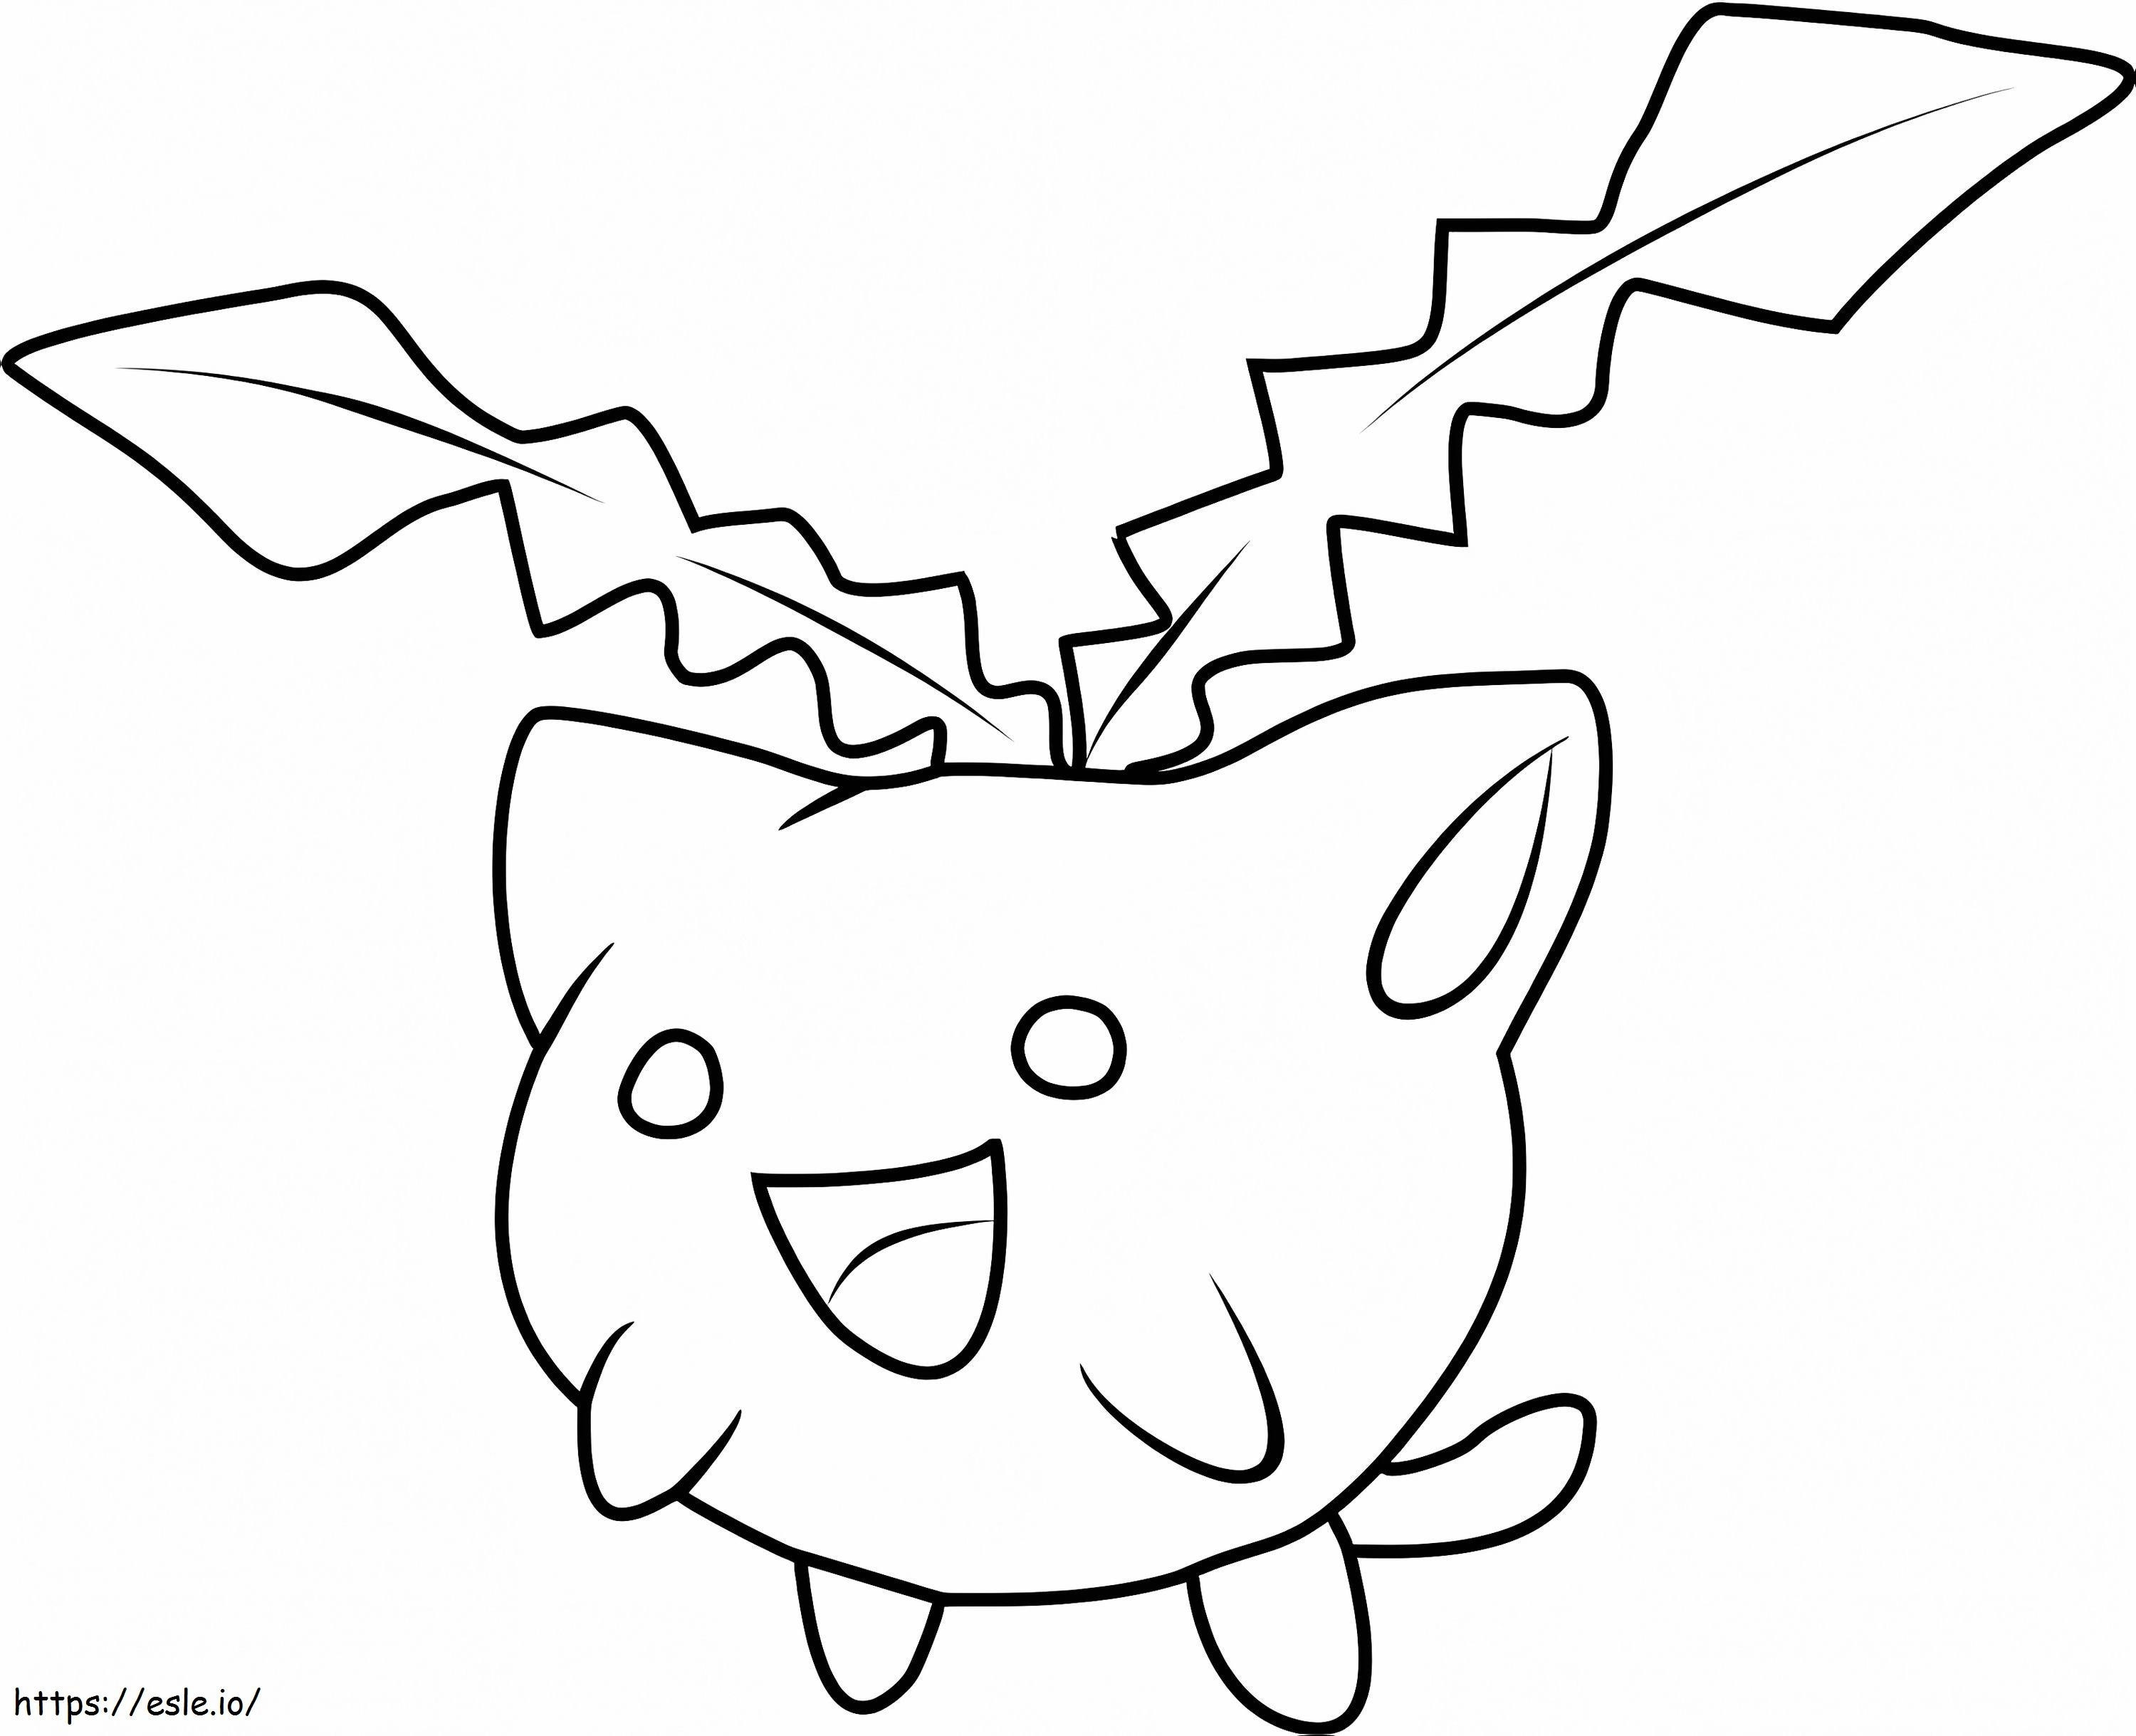 Hoppip Gen 2 Pokémon ausmalbilder